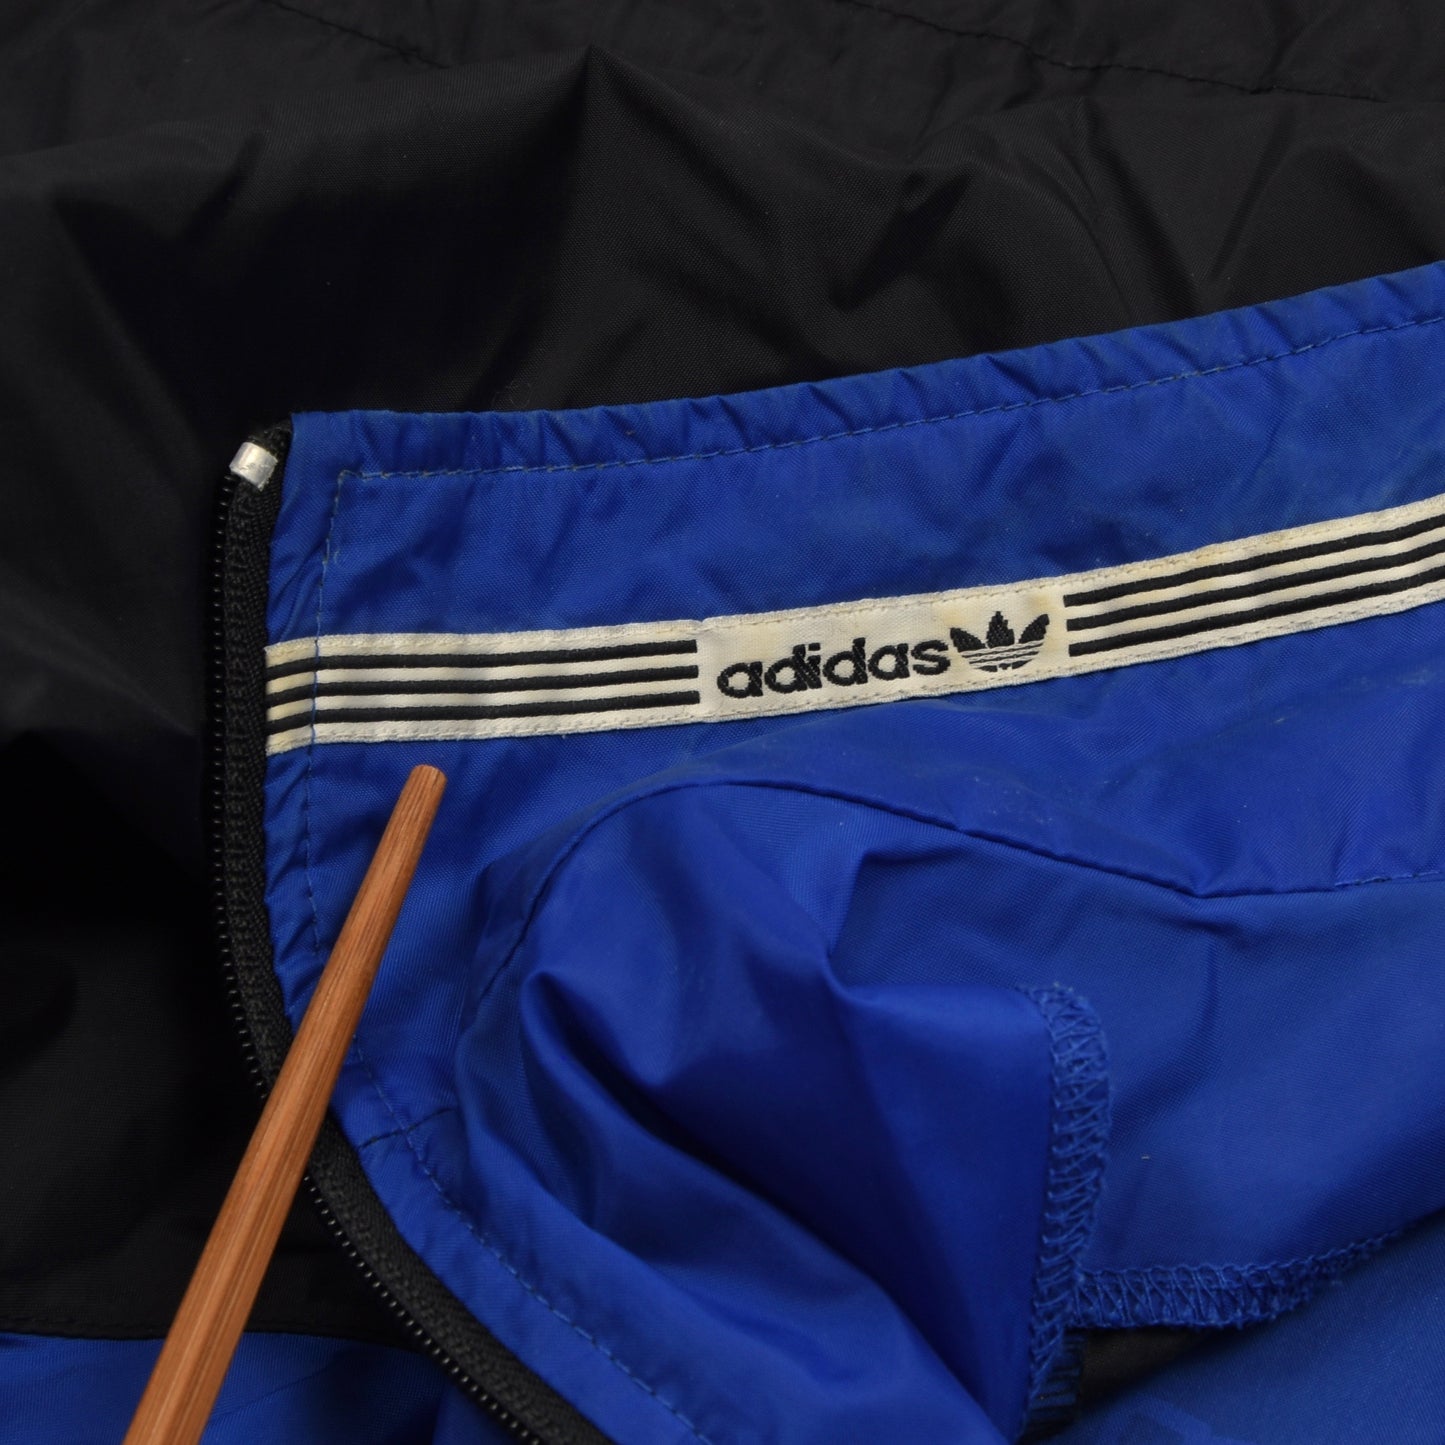 Vintage Adidas Nylon Jacket Size D8 - Blue & Black